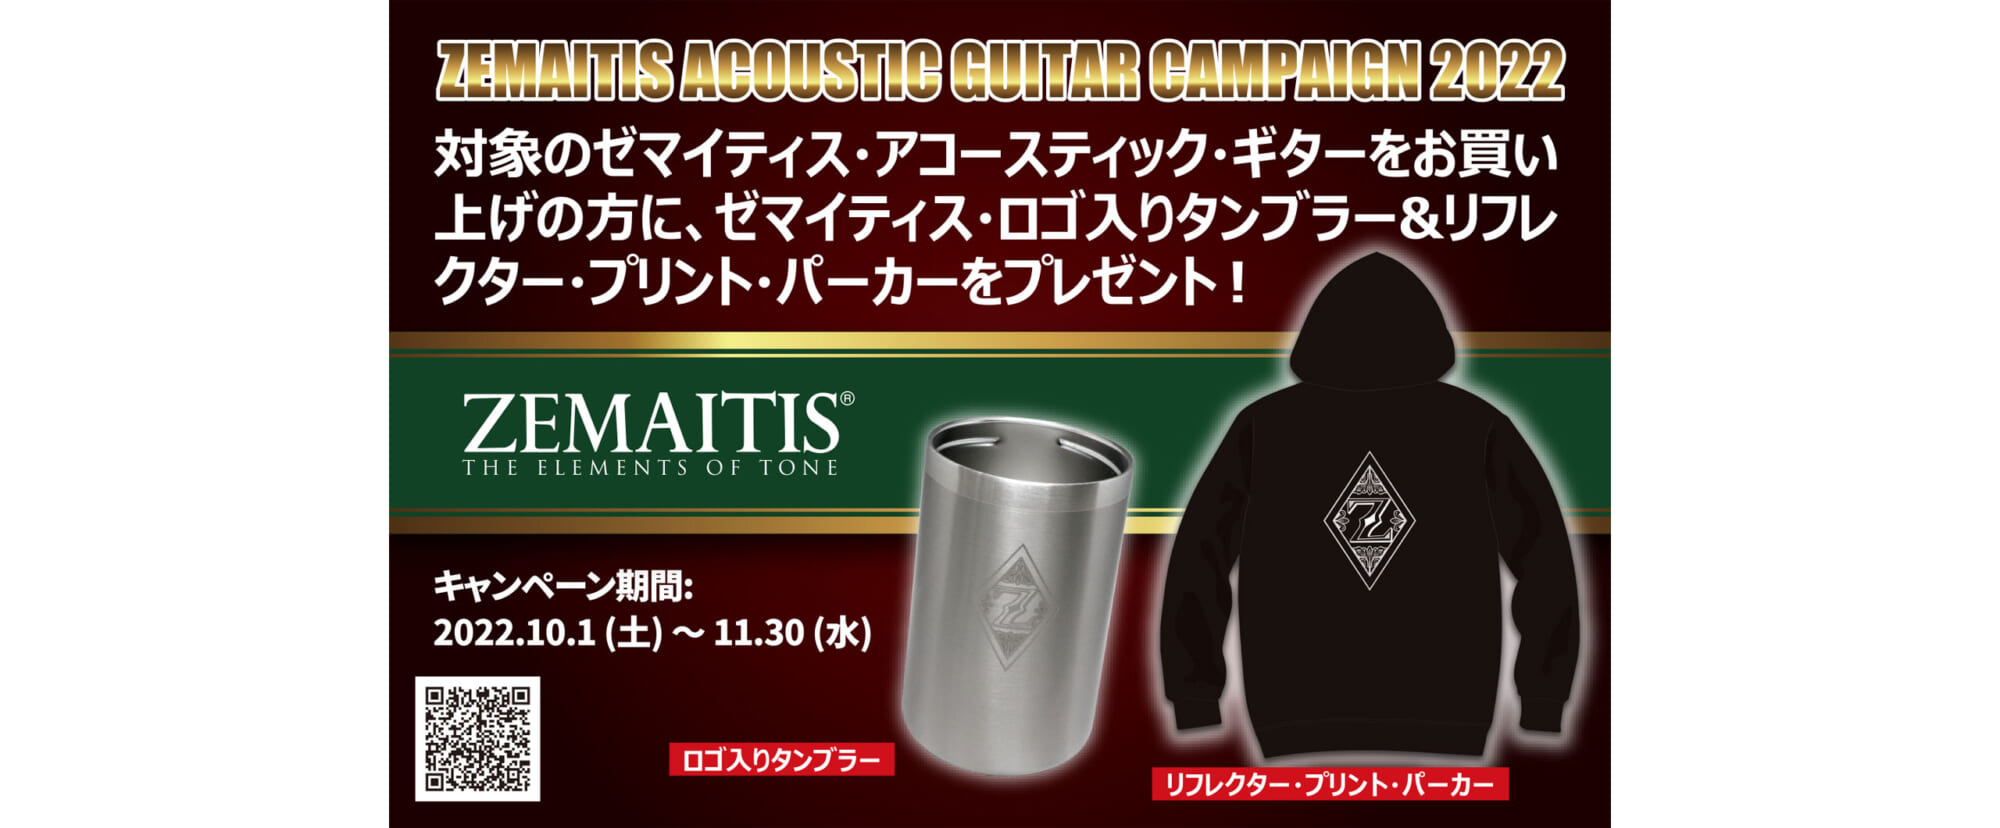 ゼマイティスのアコースティック・ギターの購入者に特製グッズをプレゼントする神田商会のキャンペーン